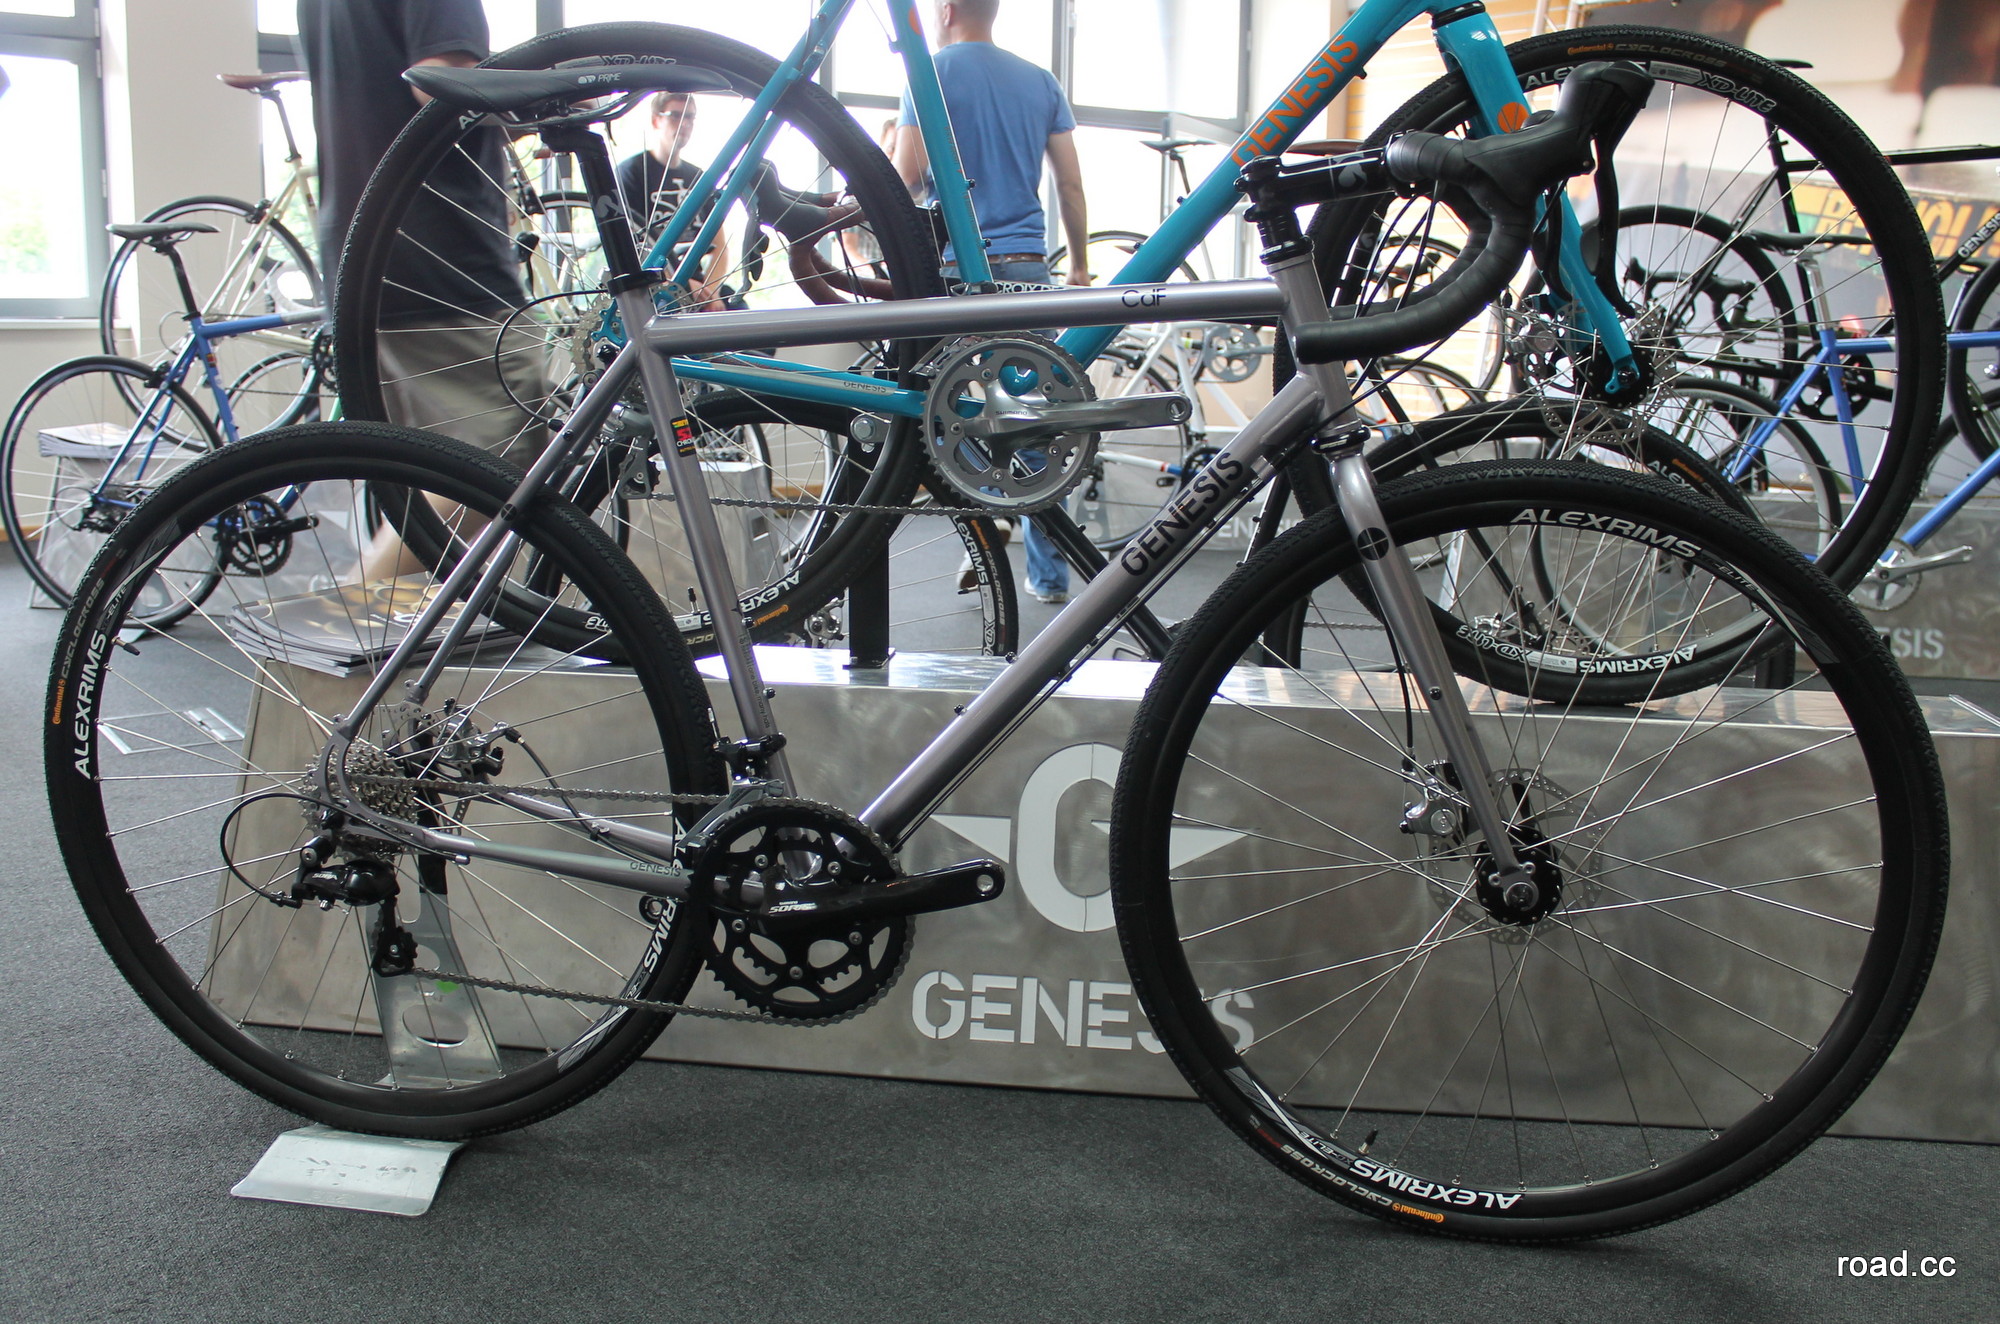 genesis bikes uk